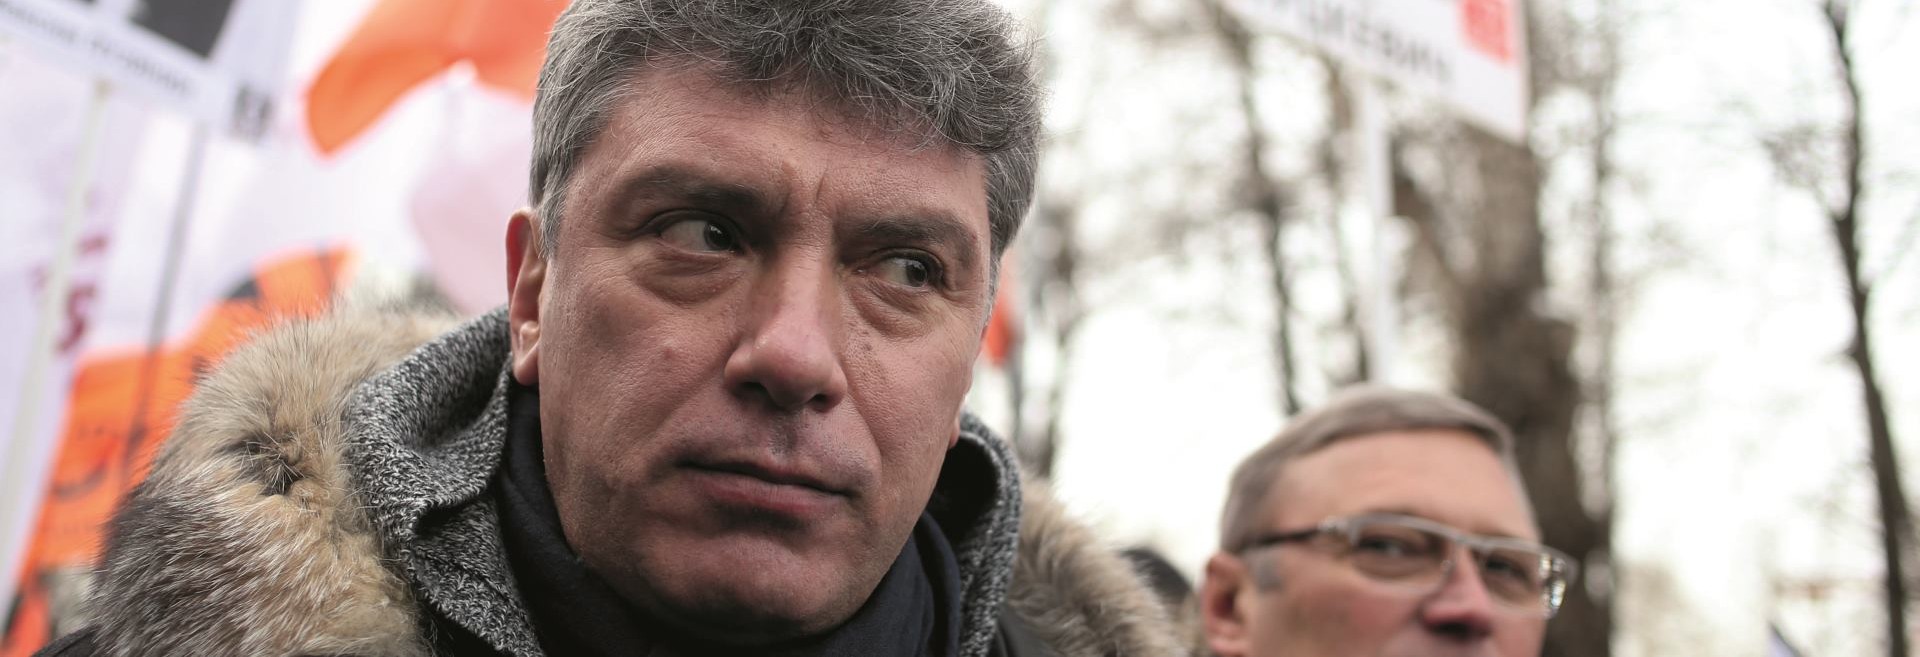 EKSKLUZIVNO DONOSIMO Izvještaj zbog kojeg je ubijen Boris Njemcov